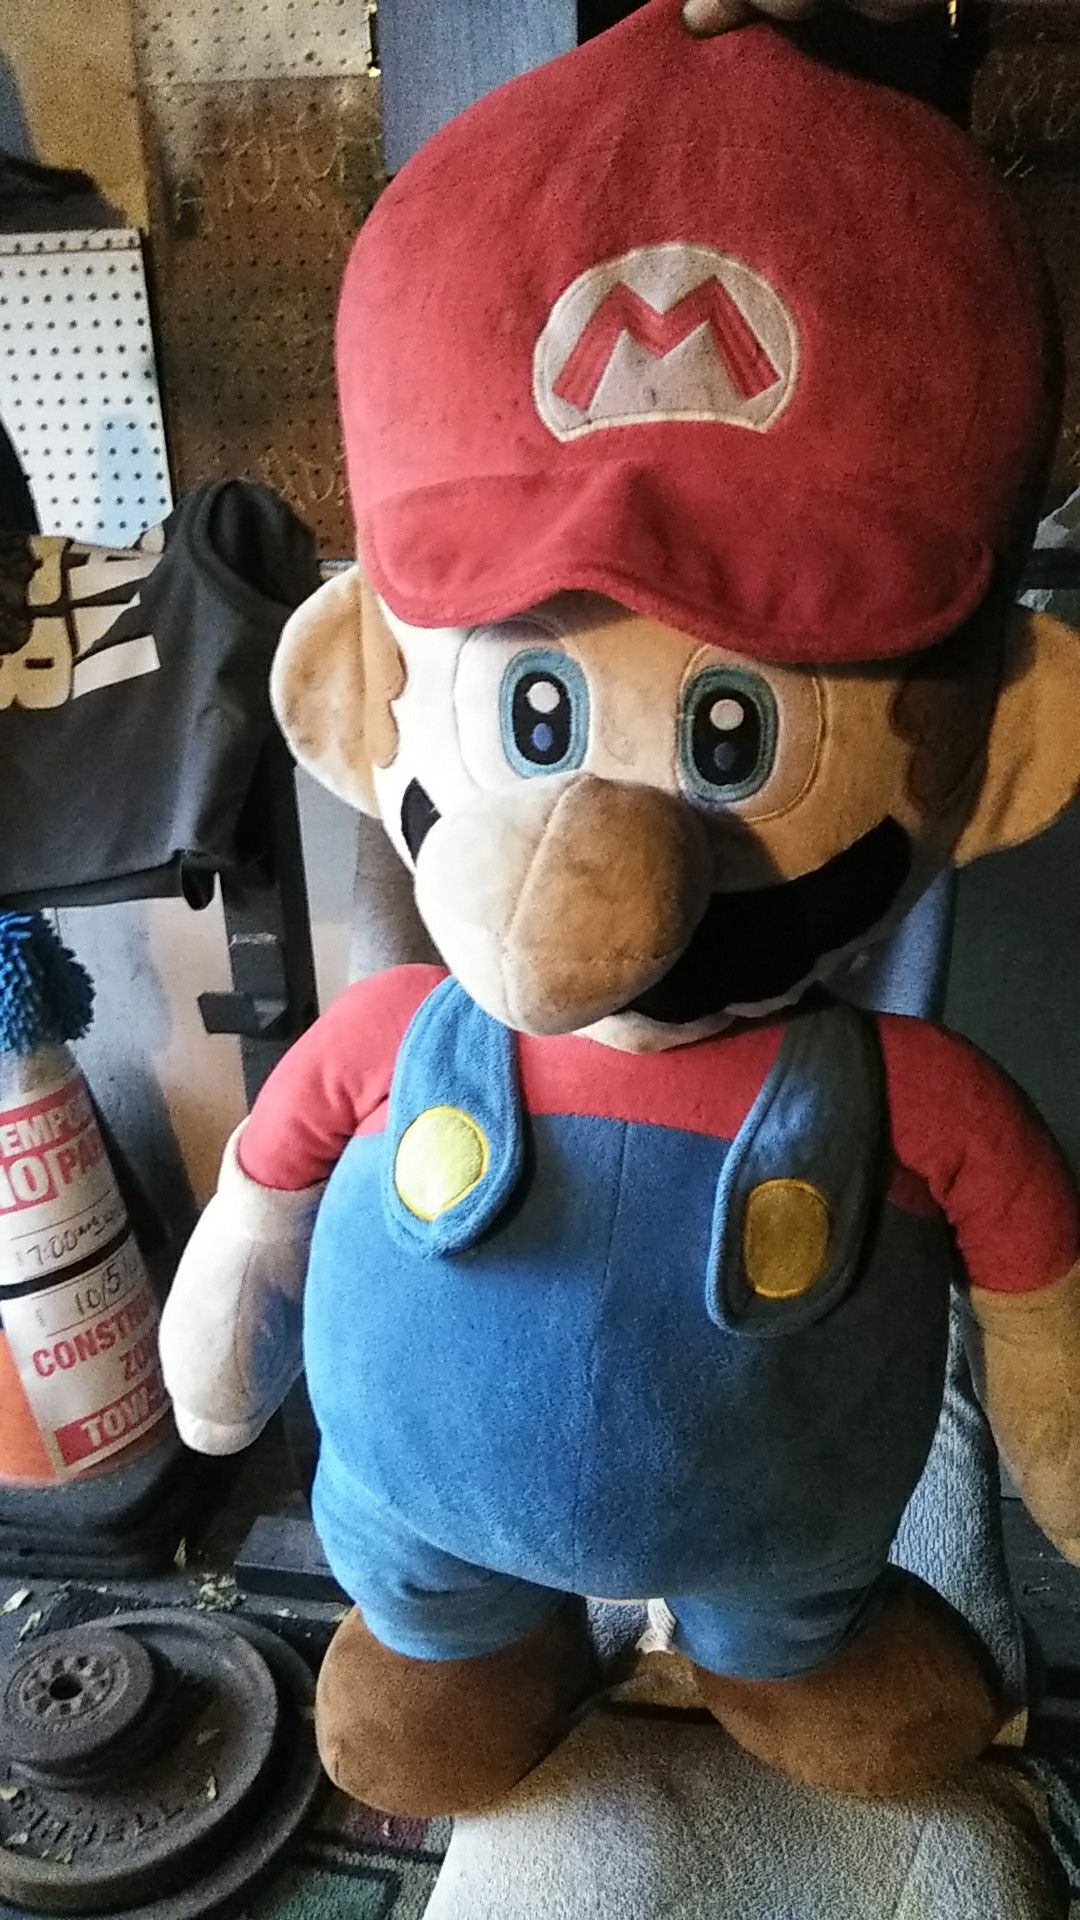 Mario Bros plushy